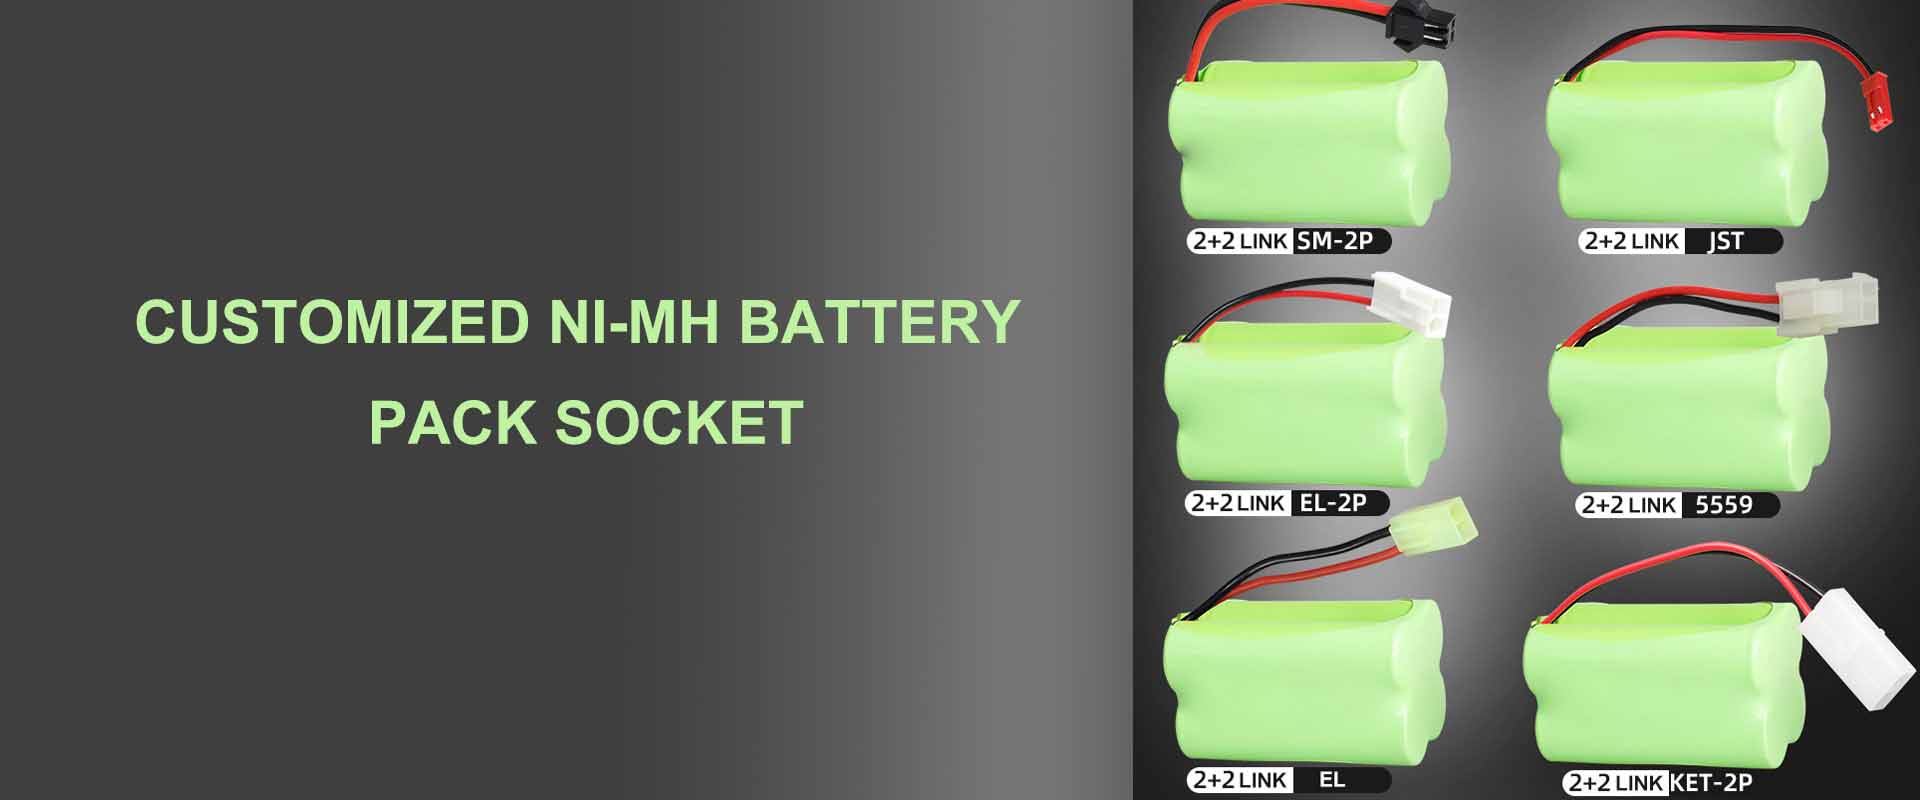 Kako kondicionirati i koristiti NiMH bateriju |WEIJIANG